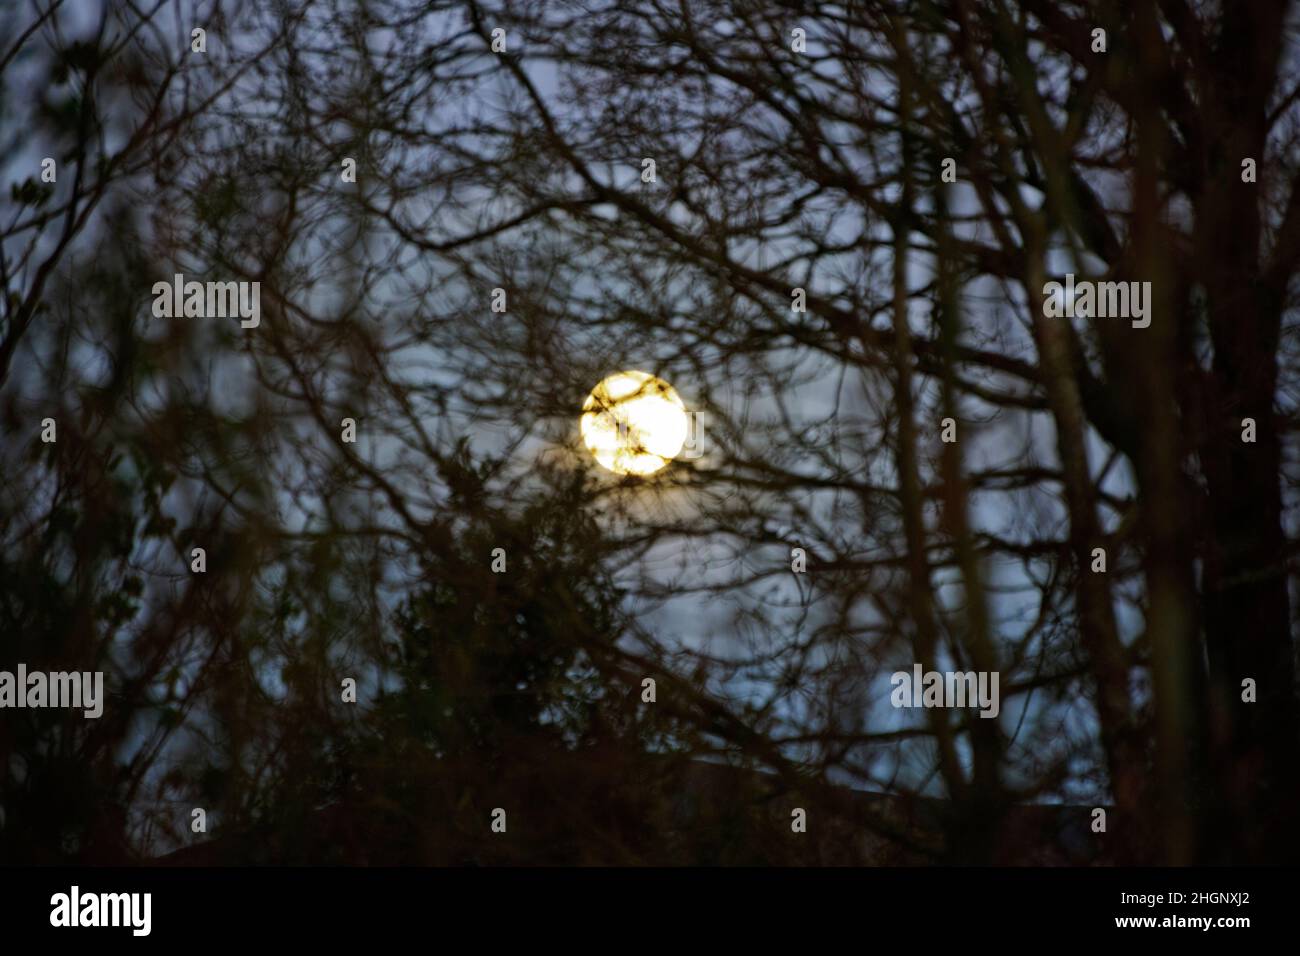 La pleine lune de l'Equinox de printemps s'élève à travers des branches d'arbre nues.Pays de Galles du Nord Banque D'Images